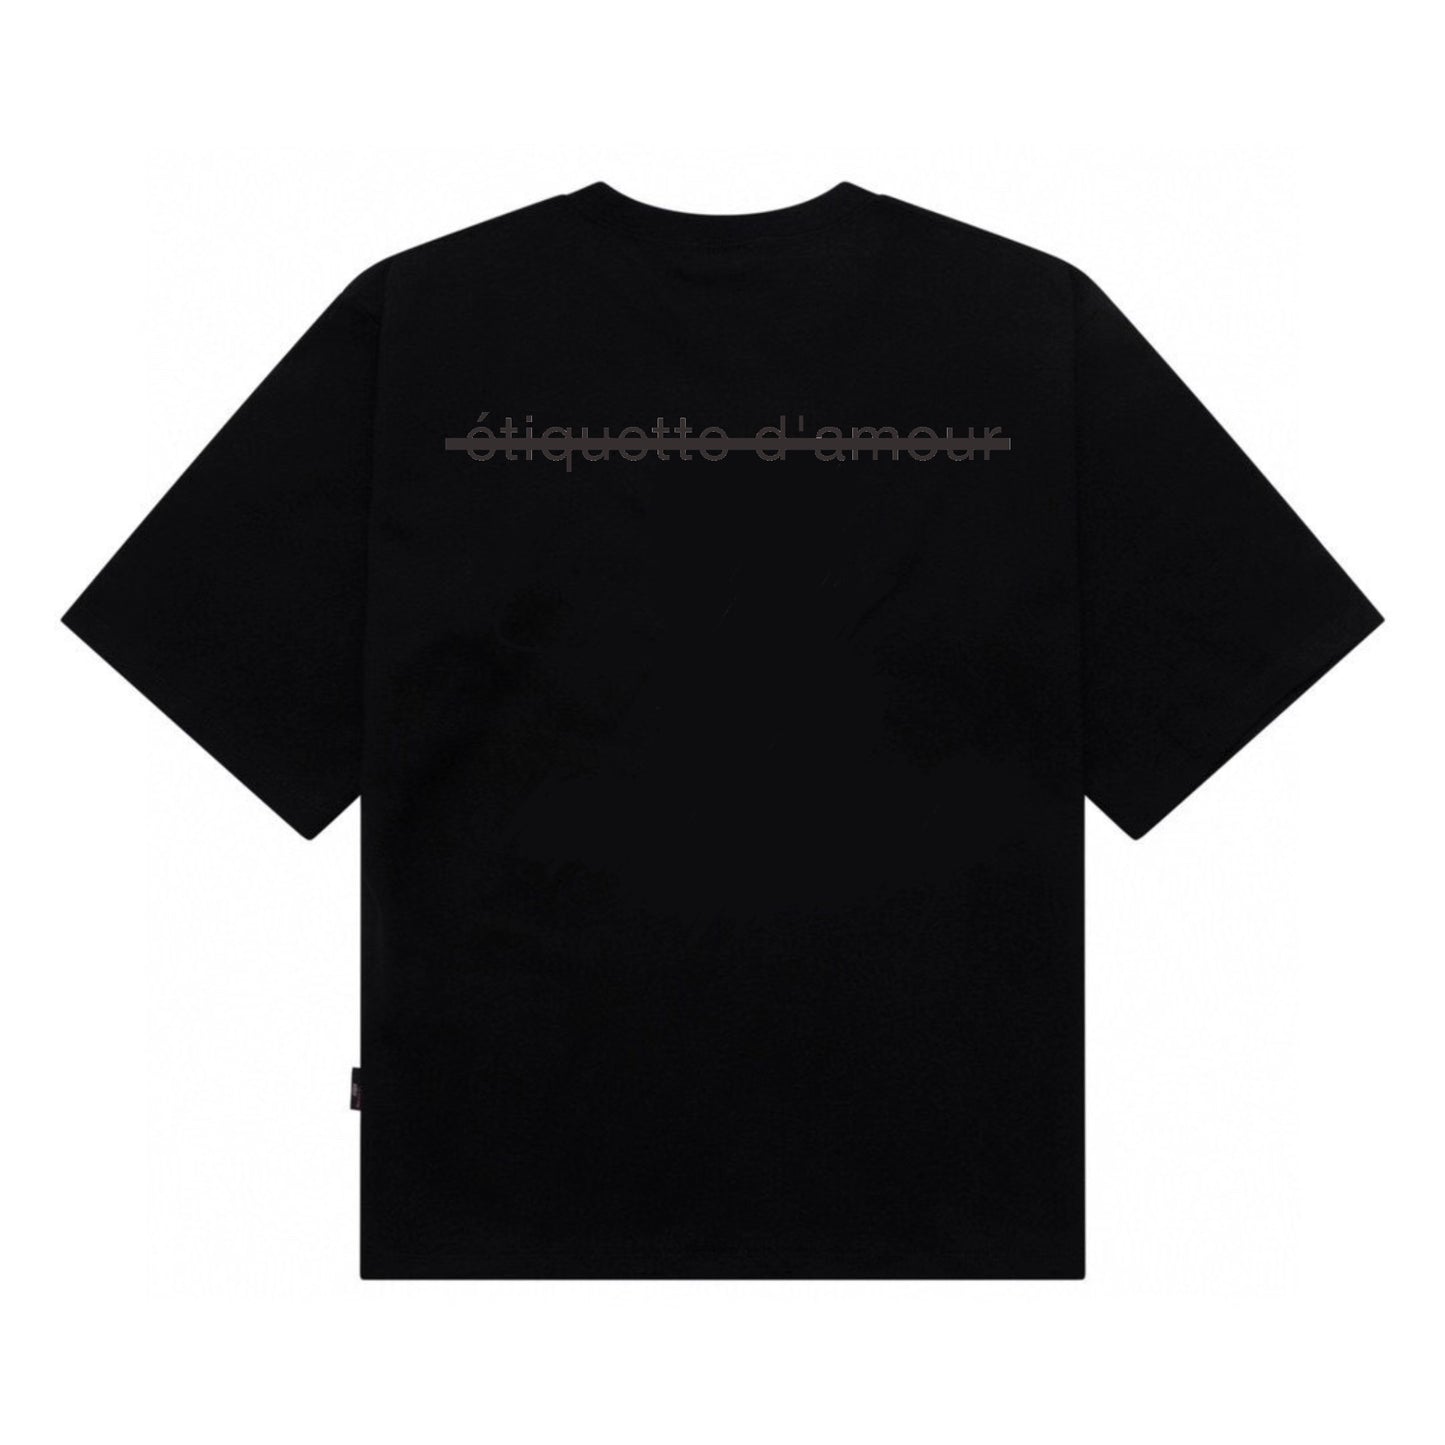 Etiquette Unisex Oversized T-Shirt - 0088 Baller Best 14 Bear